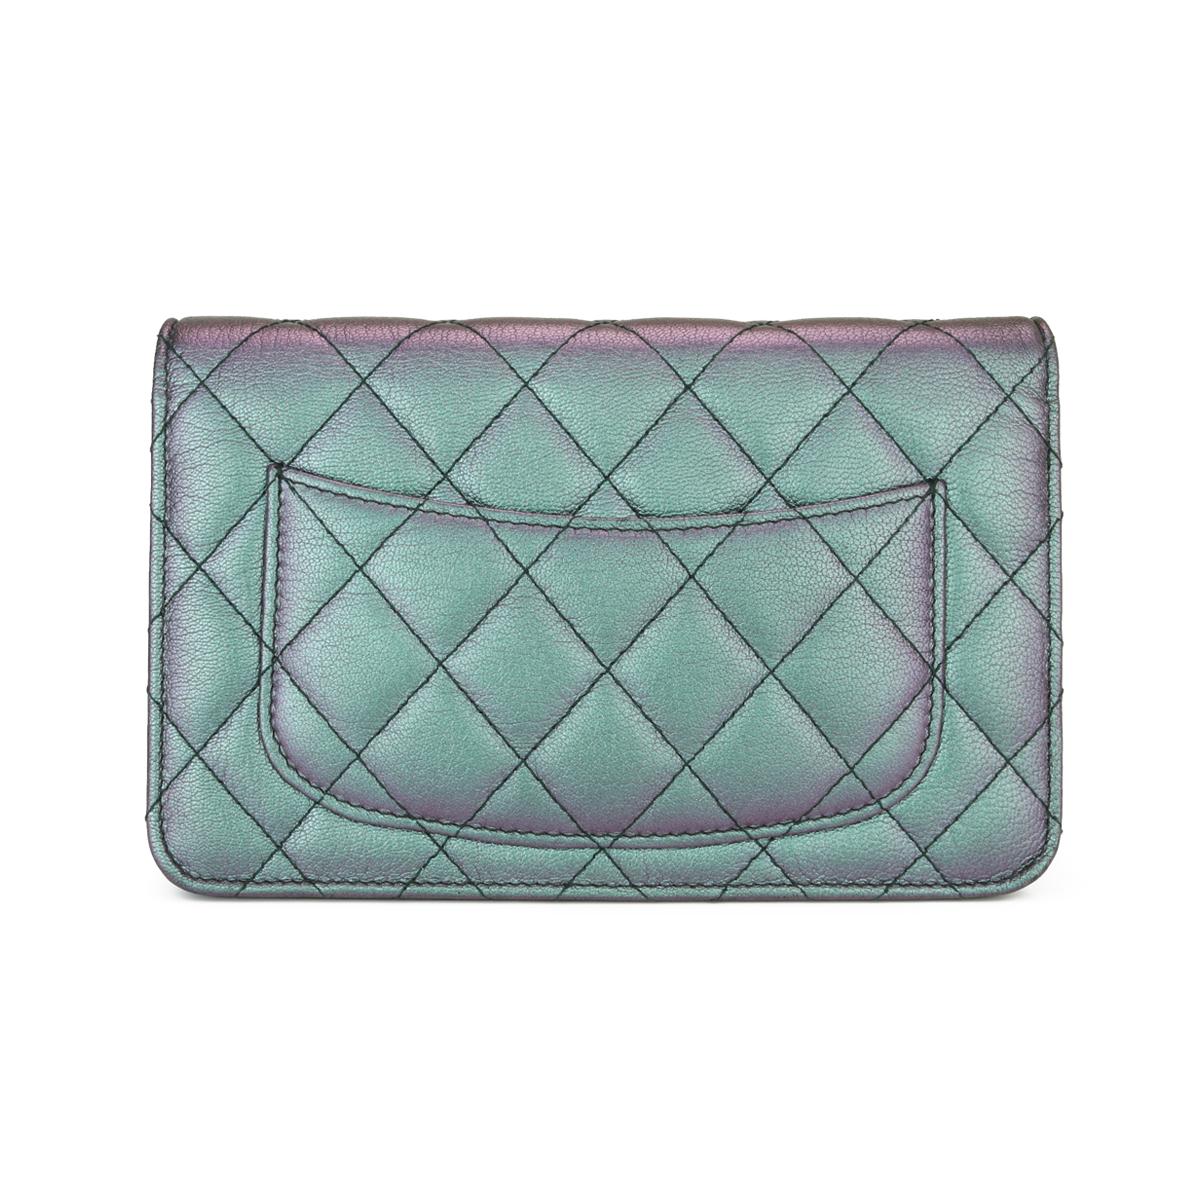 iridescent wallet